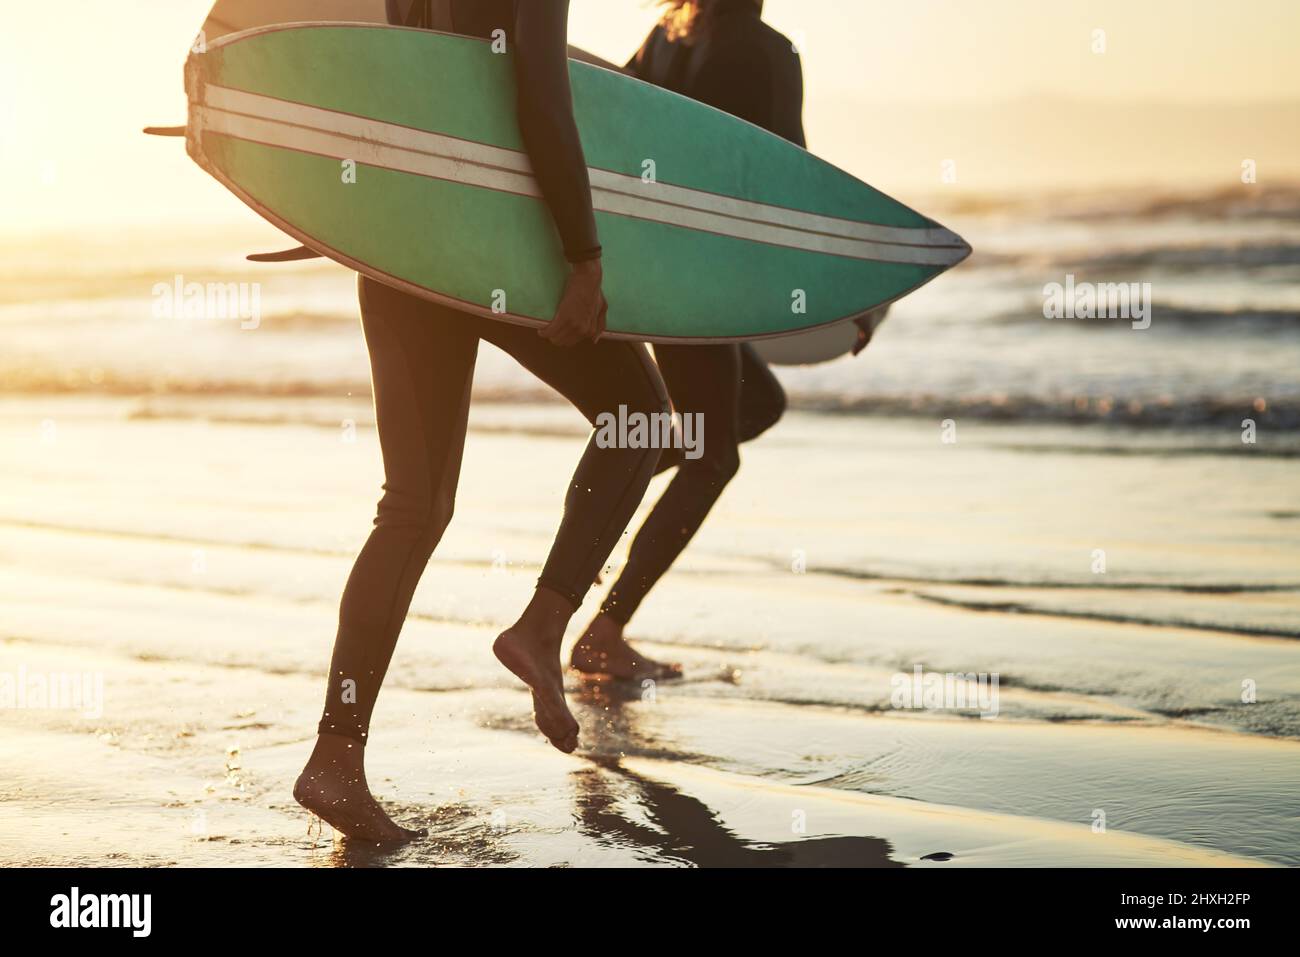 La vie est une aventure, vivez-la. Photo d'un jeune couple méconnaissable qui navigue sur la plage. Banque D'Images